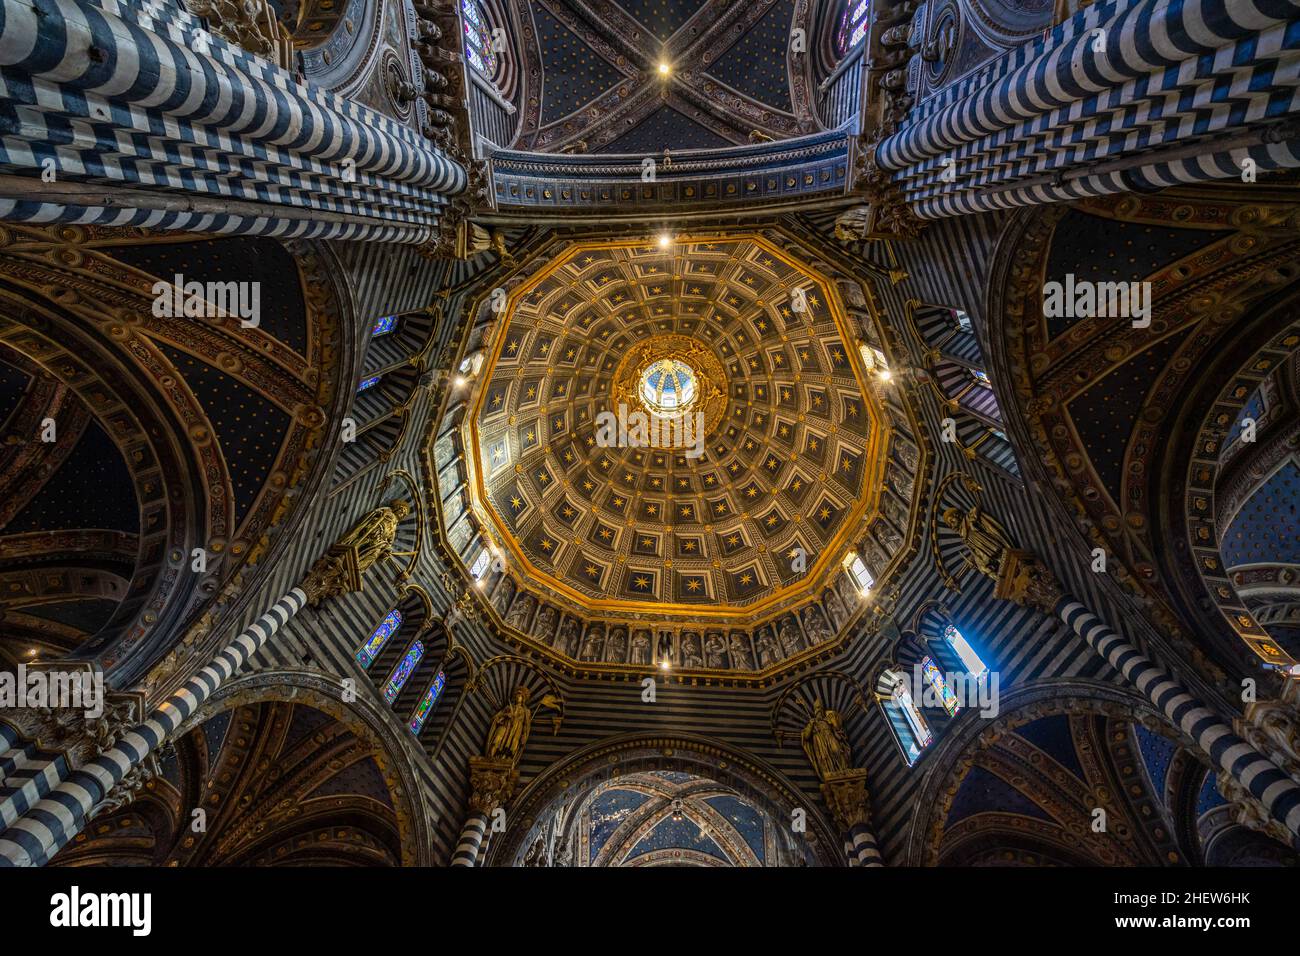 La cupola esagonale è del Duomo di Siena. Le casse trompe-l'oeil erano dipinte in blu con stelle dorate. Siena, Italia, 2021 agosto Foto Stock